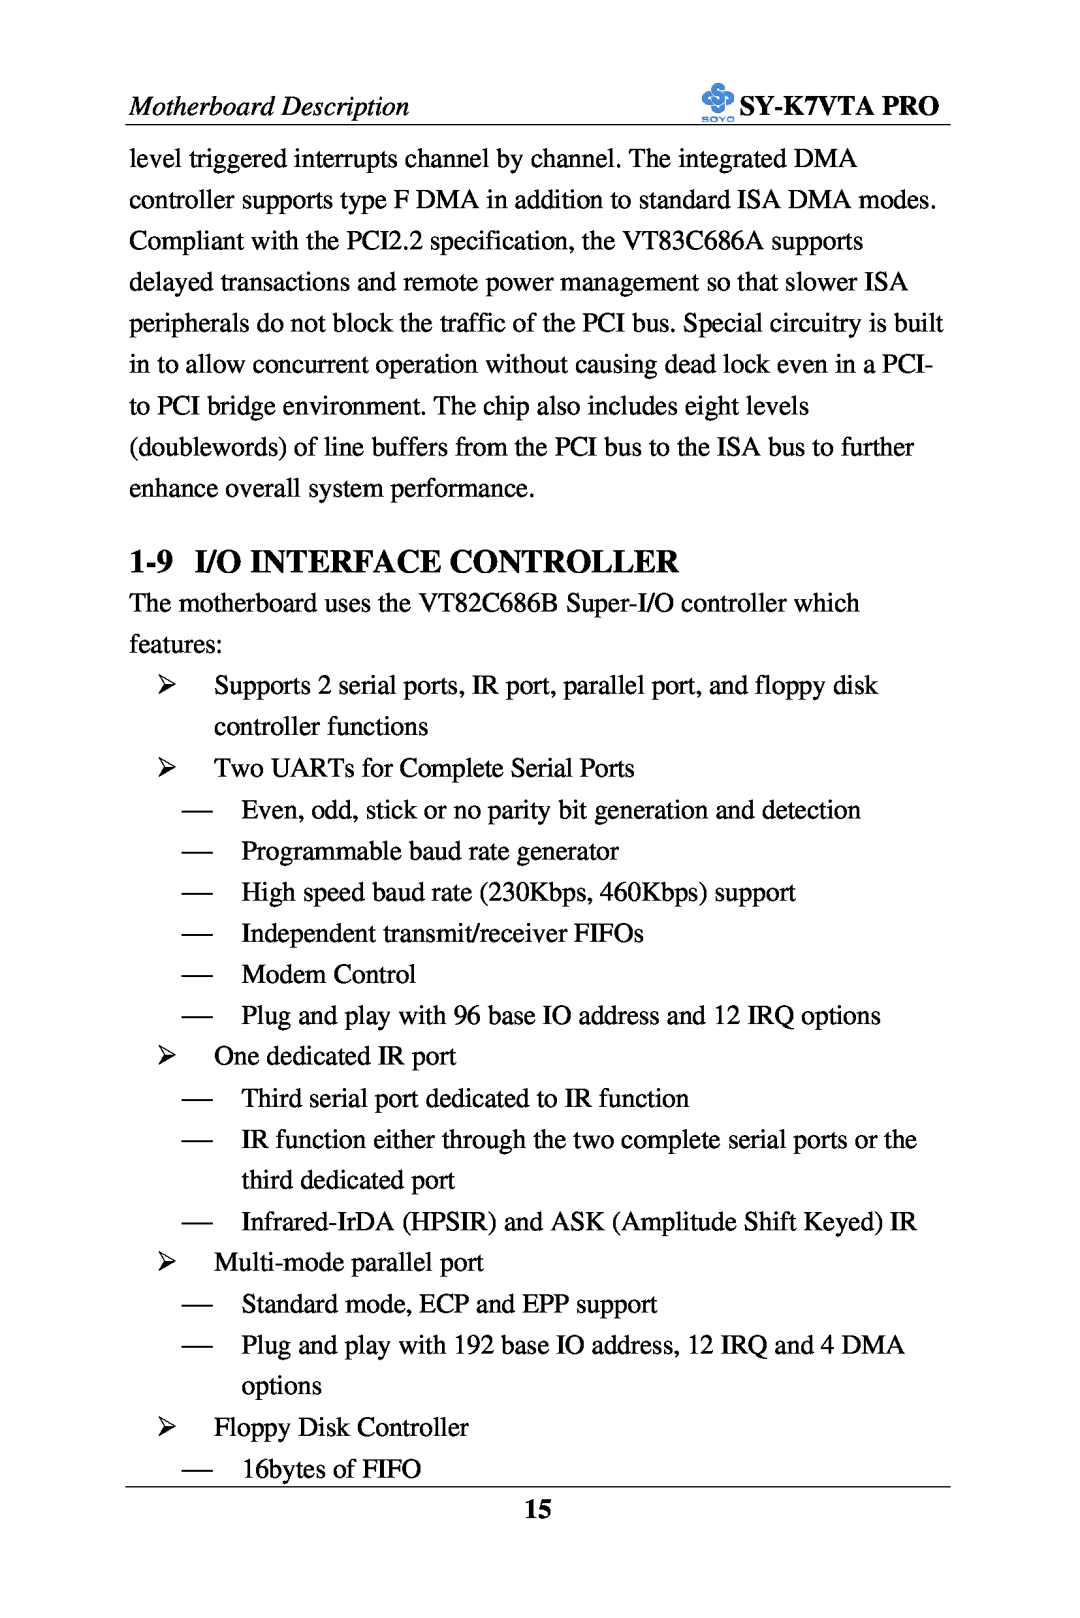 SOYO SY-K7VTA PRO user manual 1-9 I/O INTERFACE CONTROLLER, Motherboard Description 